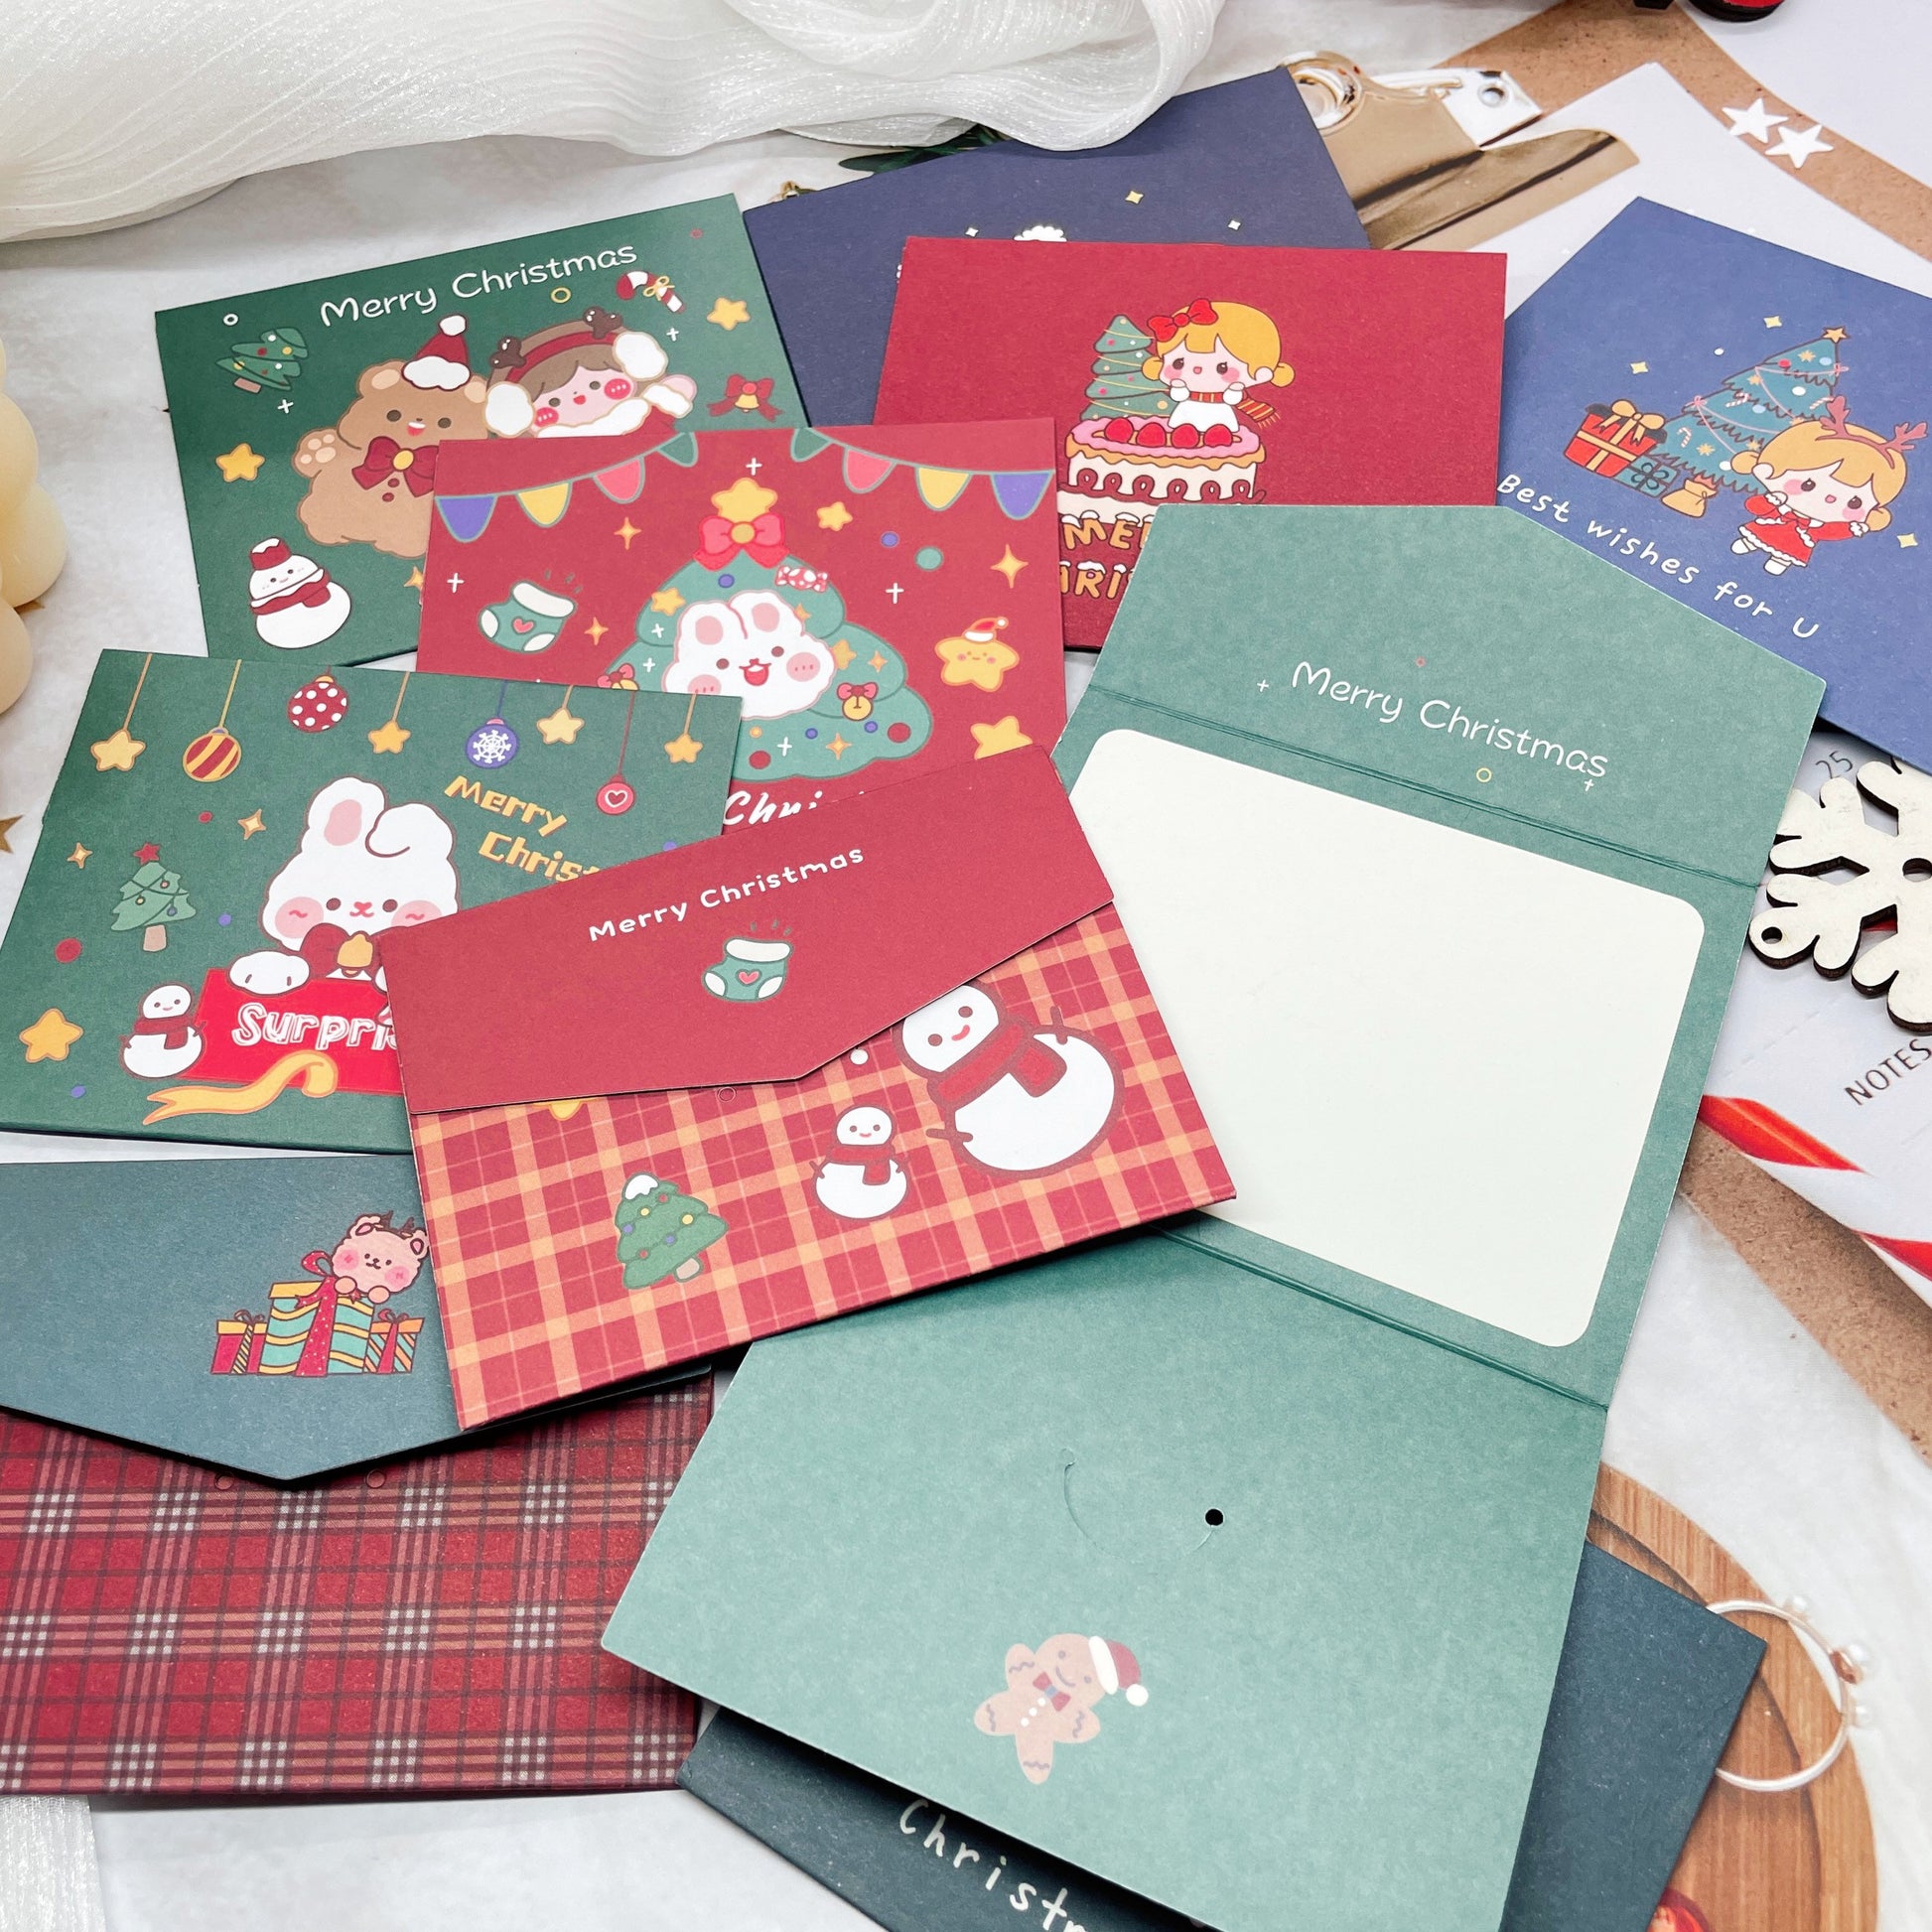 Christmas Greeting Cards - Blank Cards, Creative Greeting Cards, Cute Stationery, Kawaii Greeting Cards, Birthday Cards, Bunny, Teddy Bear